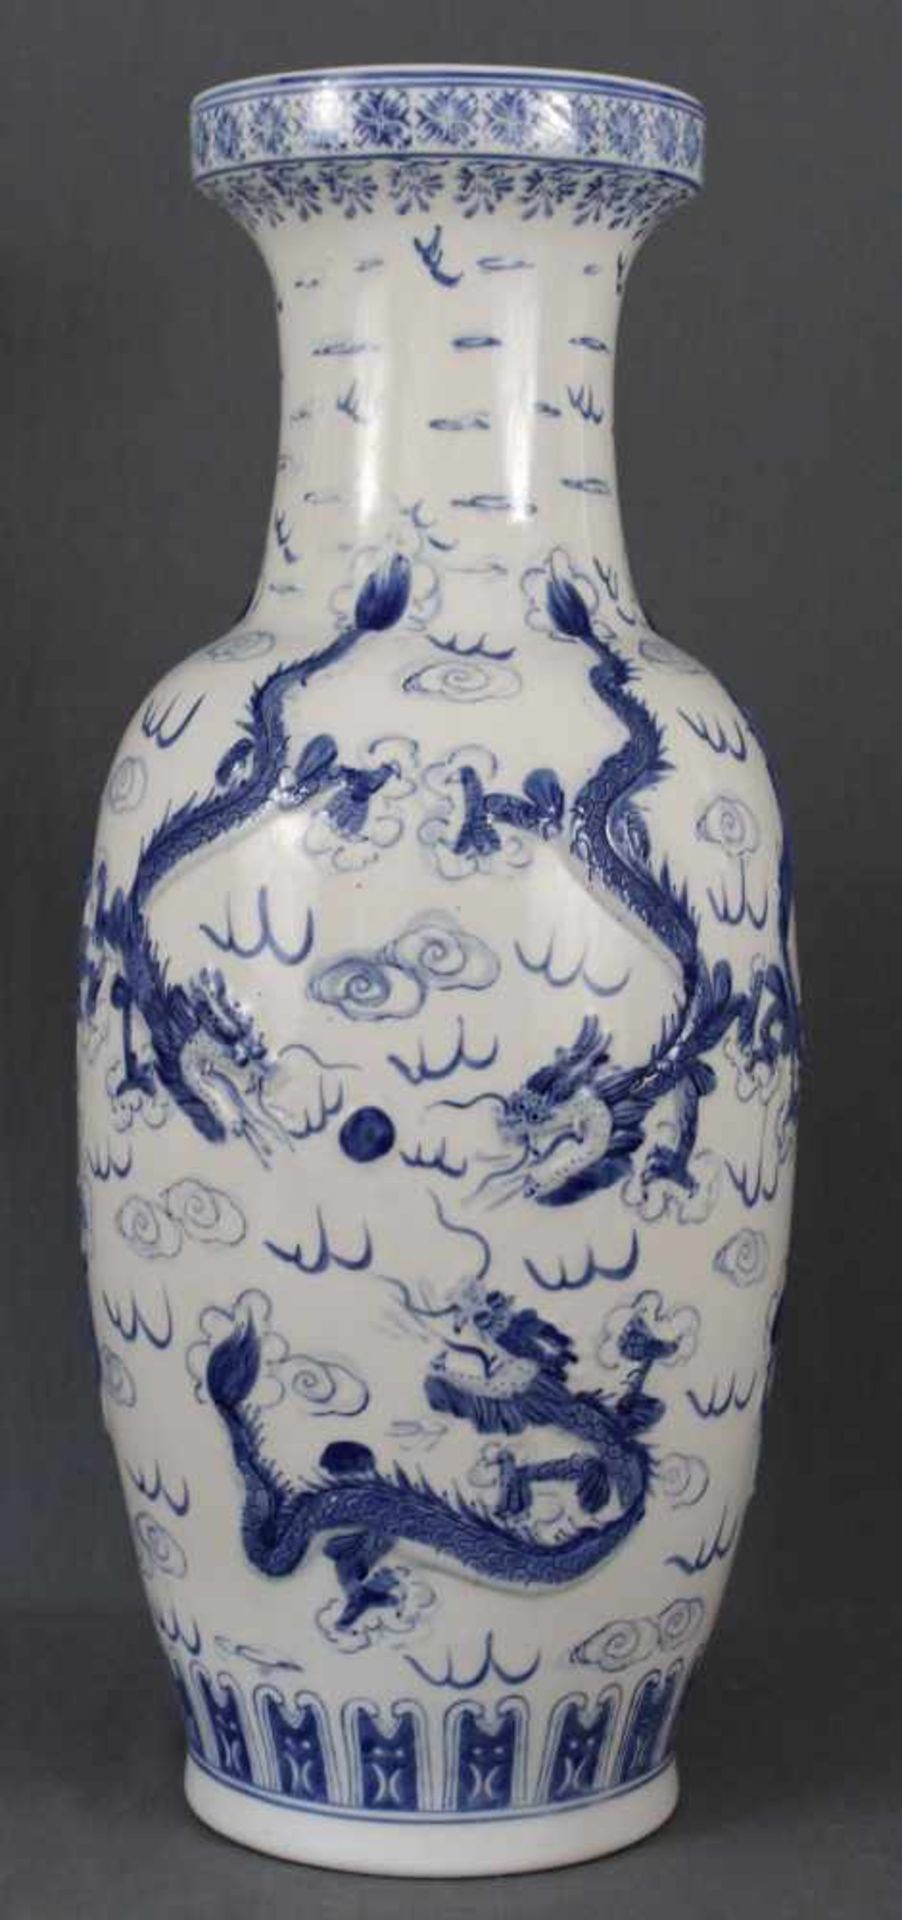 Vase. Imperialer Drache mit 4 Klauen. Wohl China, späte Qing Periode. 63 cm hoch. Porzellan blau -